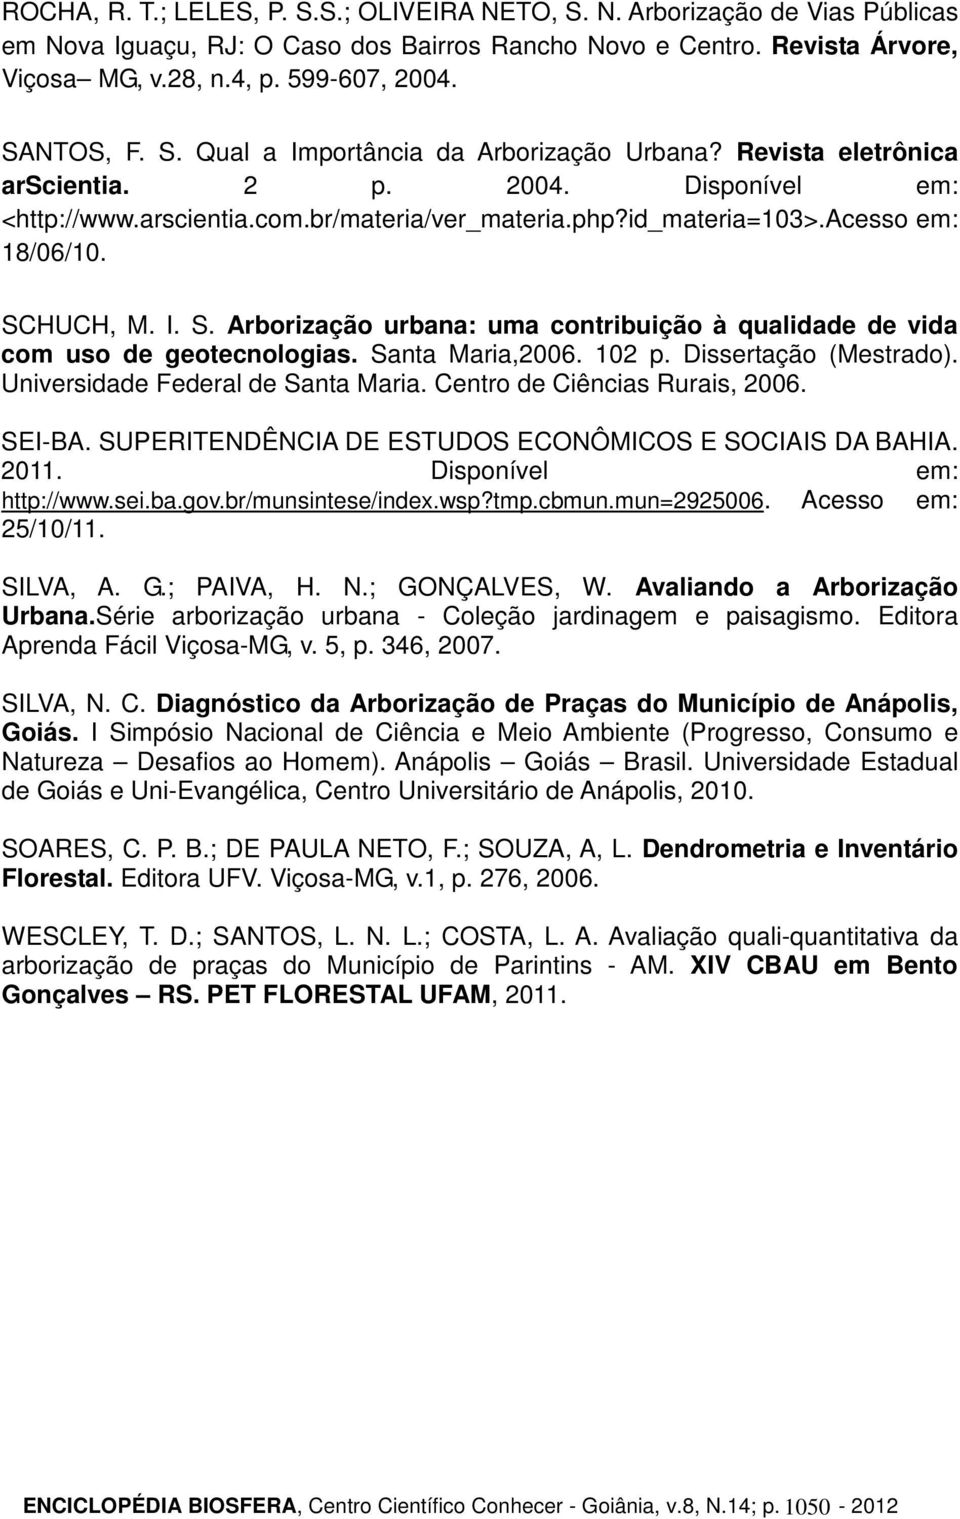 acesso em: 18/06/10. SCHUCH, M. I. S. Arborização urbana: uma contribuição à qualidade de vida com uso de geotecnologias. Santa Maria,2006. 102 p. Dissertação (Mestrado).